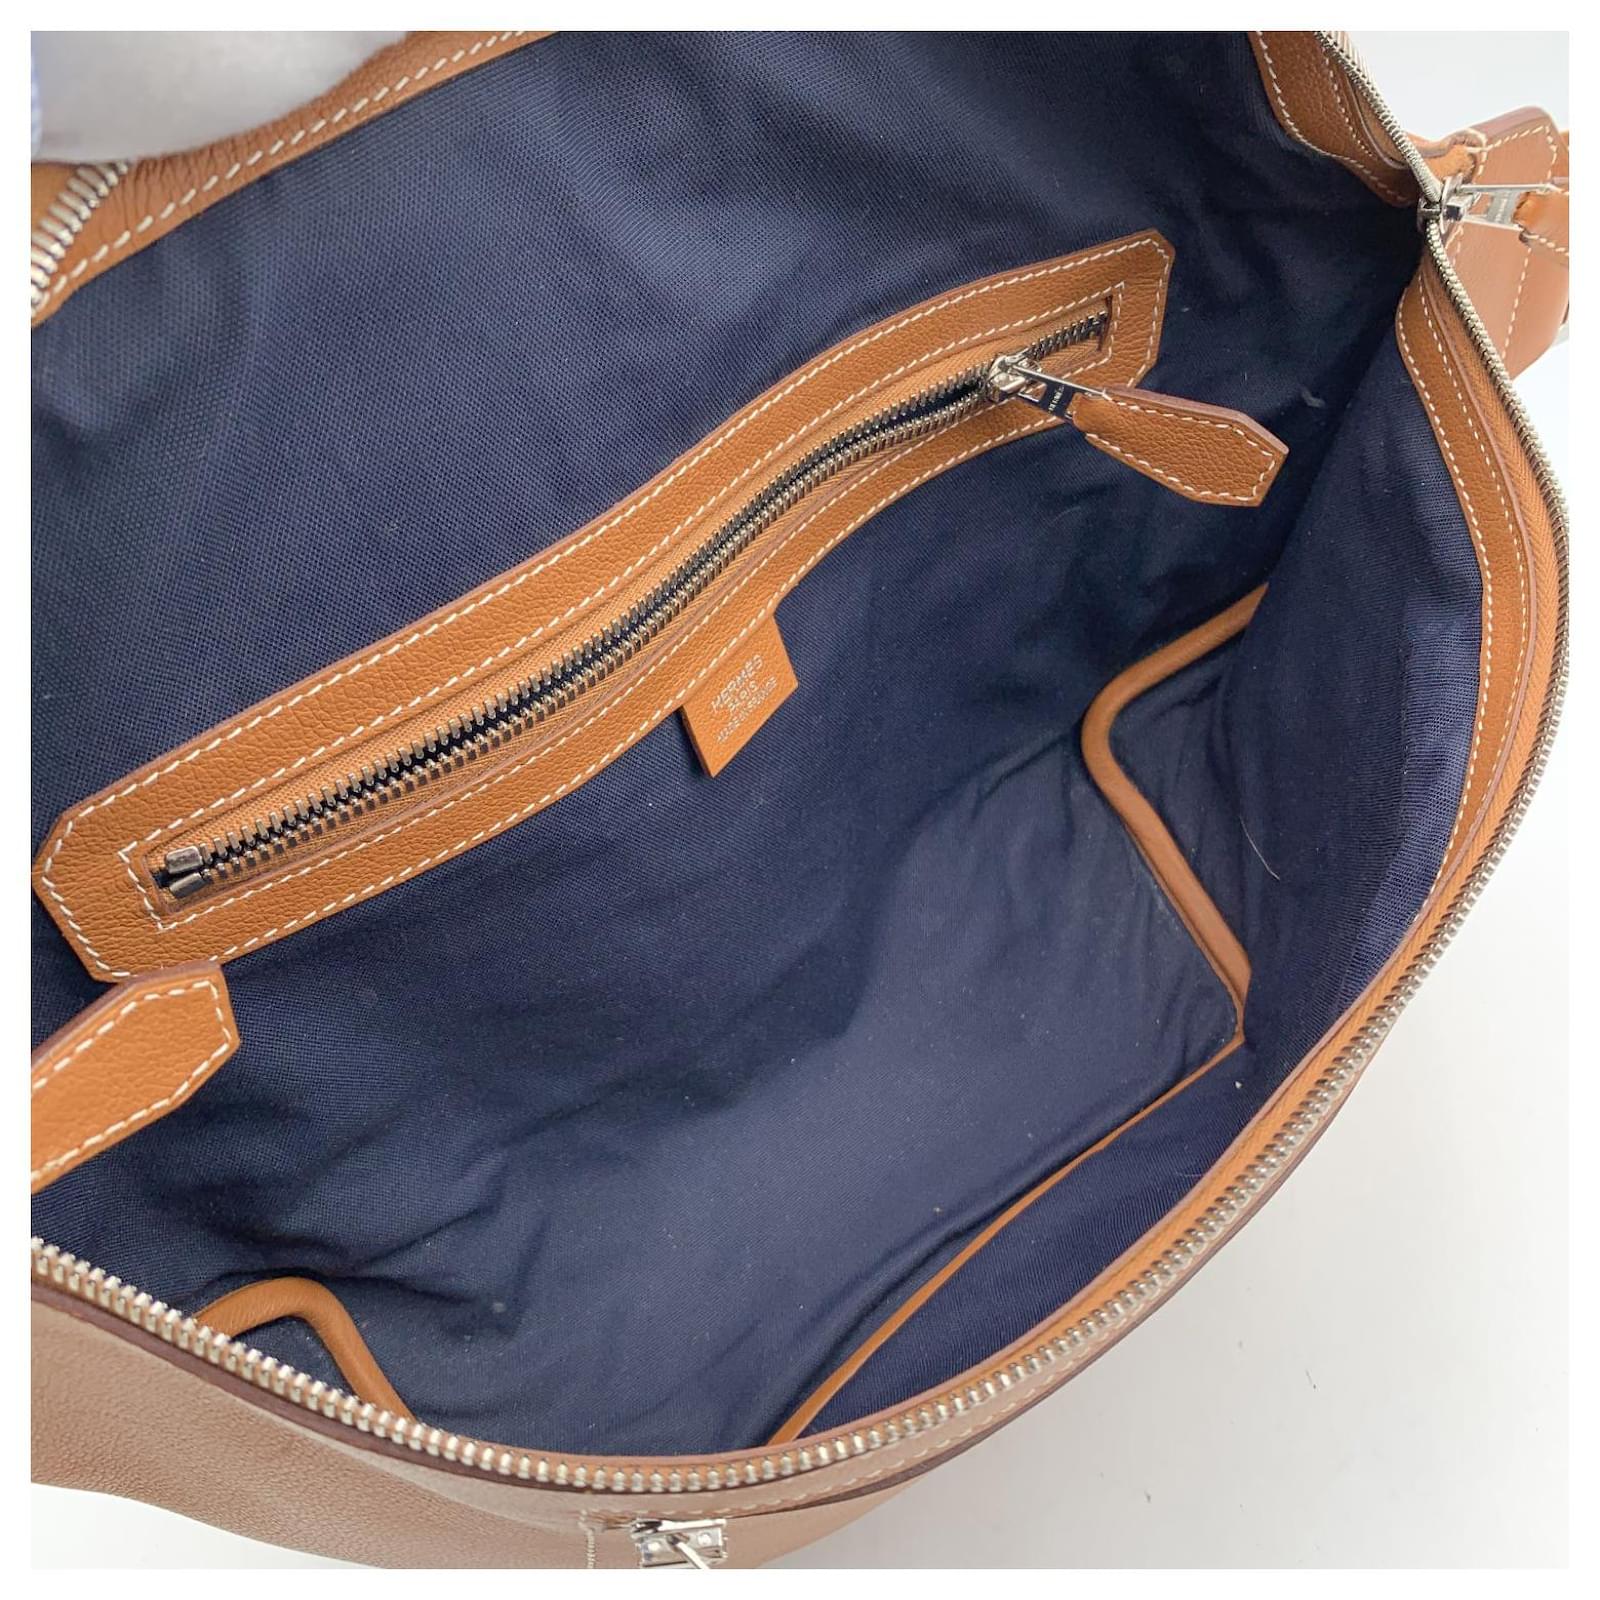 Shop HERMES Cityslide Street Style Plain Leather Crossbody Bag